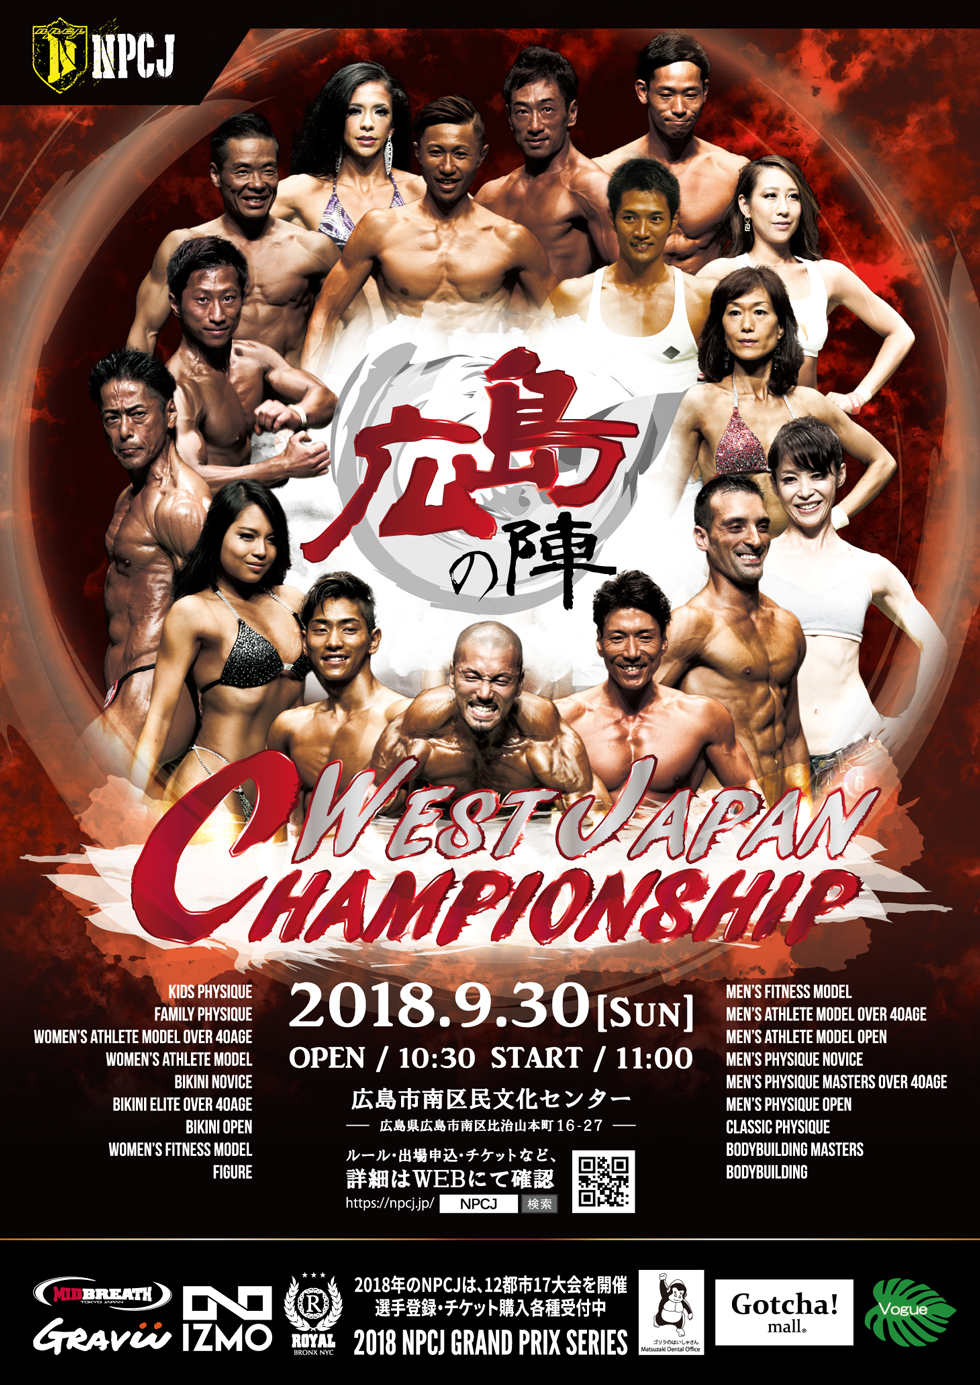 West japan championship 2018 ポスター